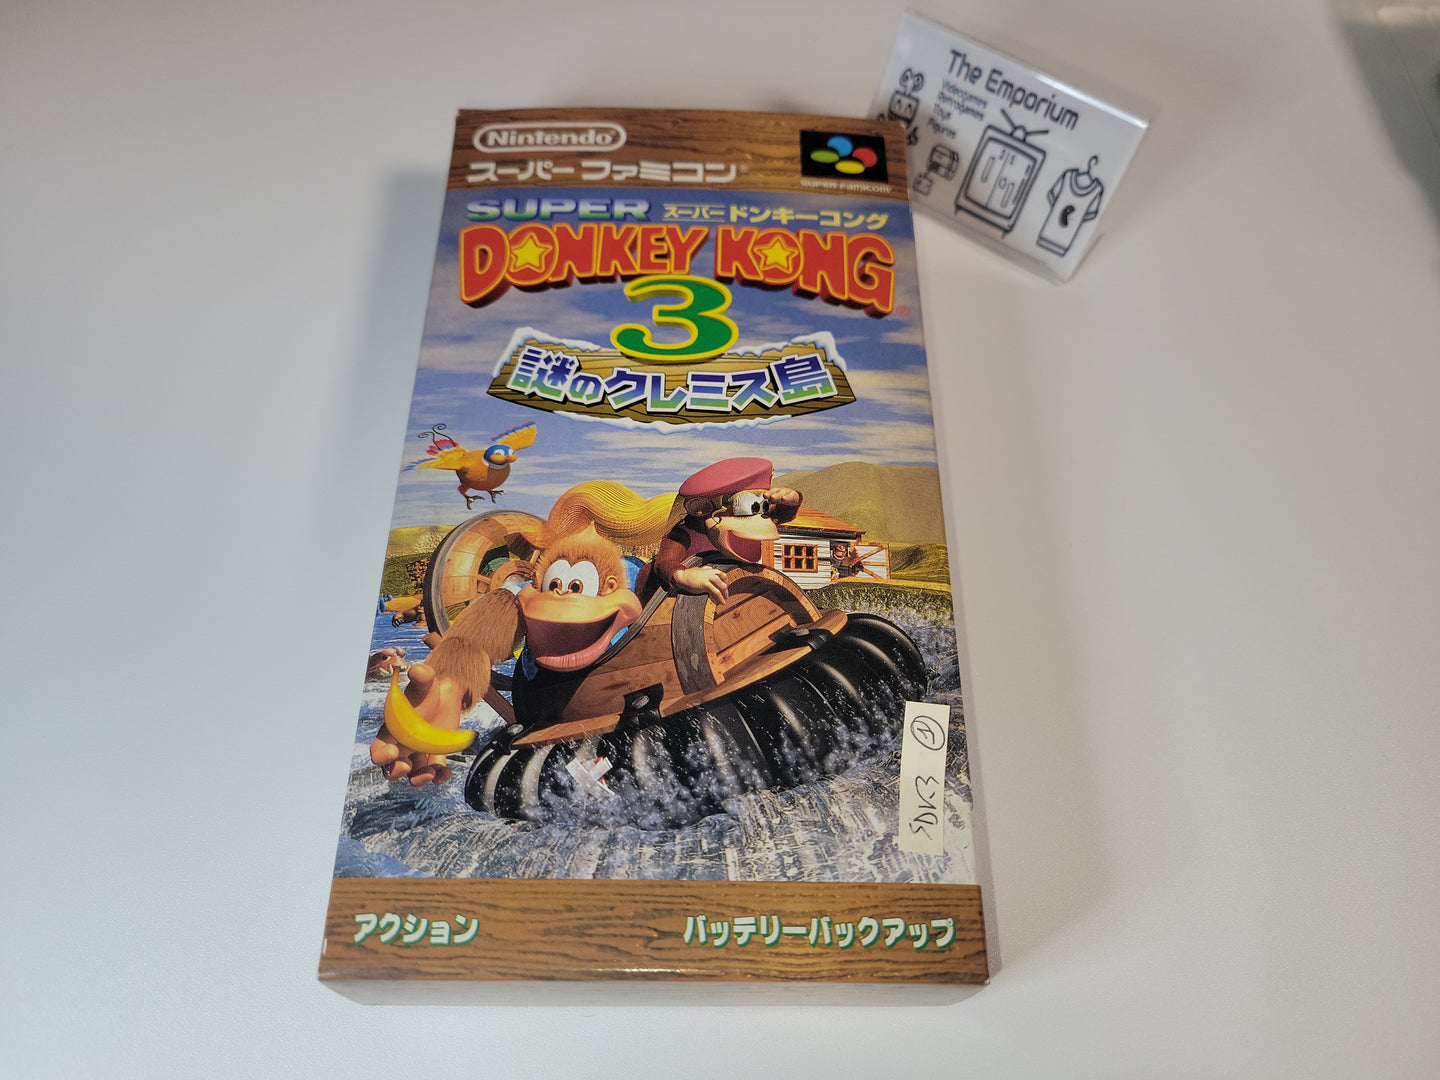 Super Donkey Kong 3 - Nintendo Sfc Super Famicom